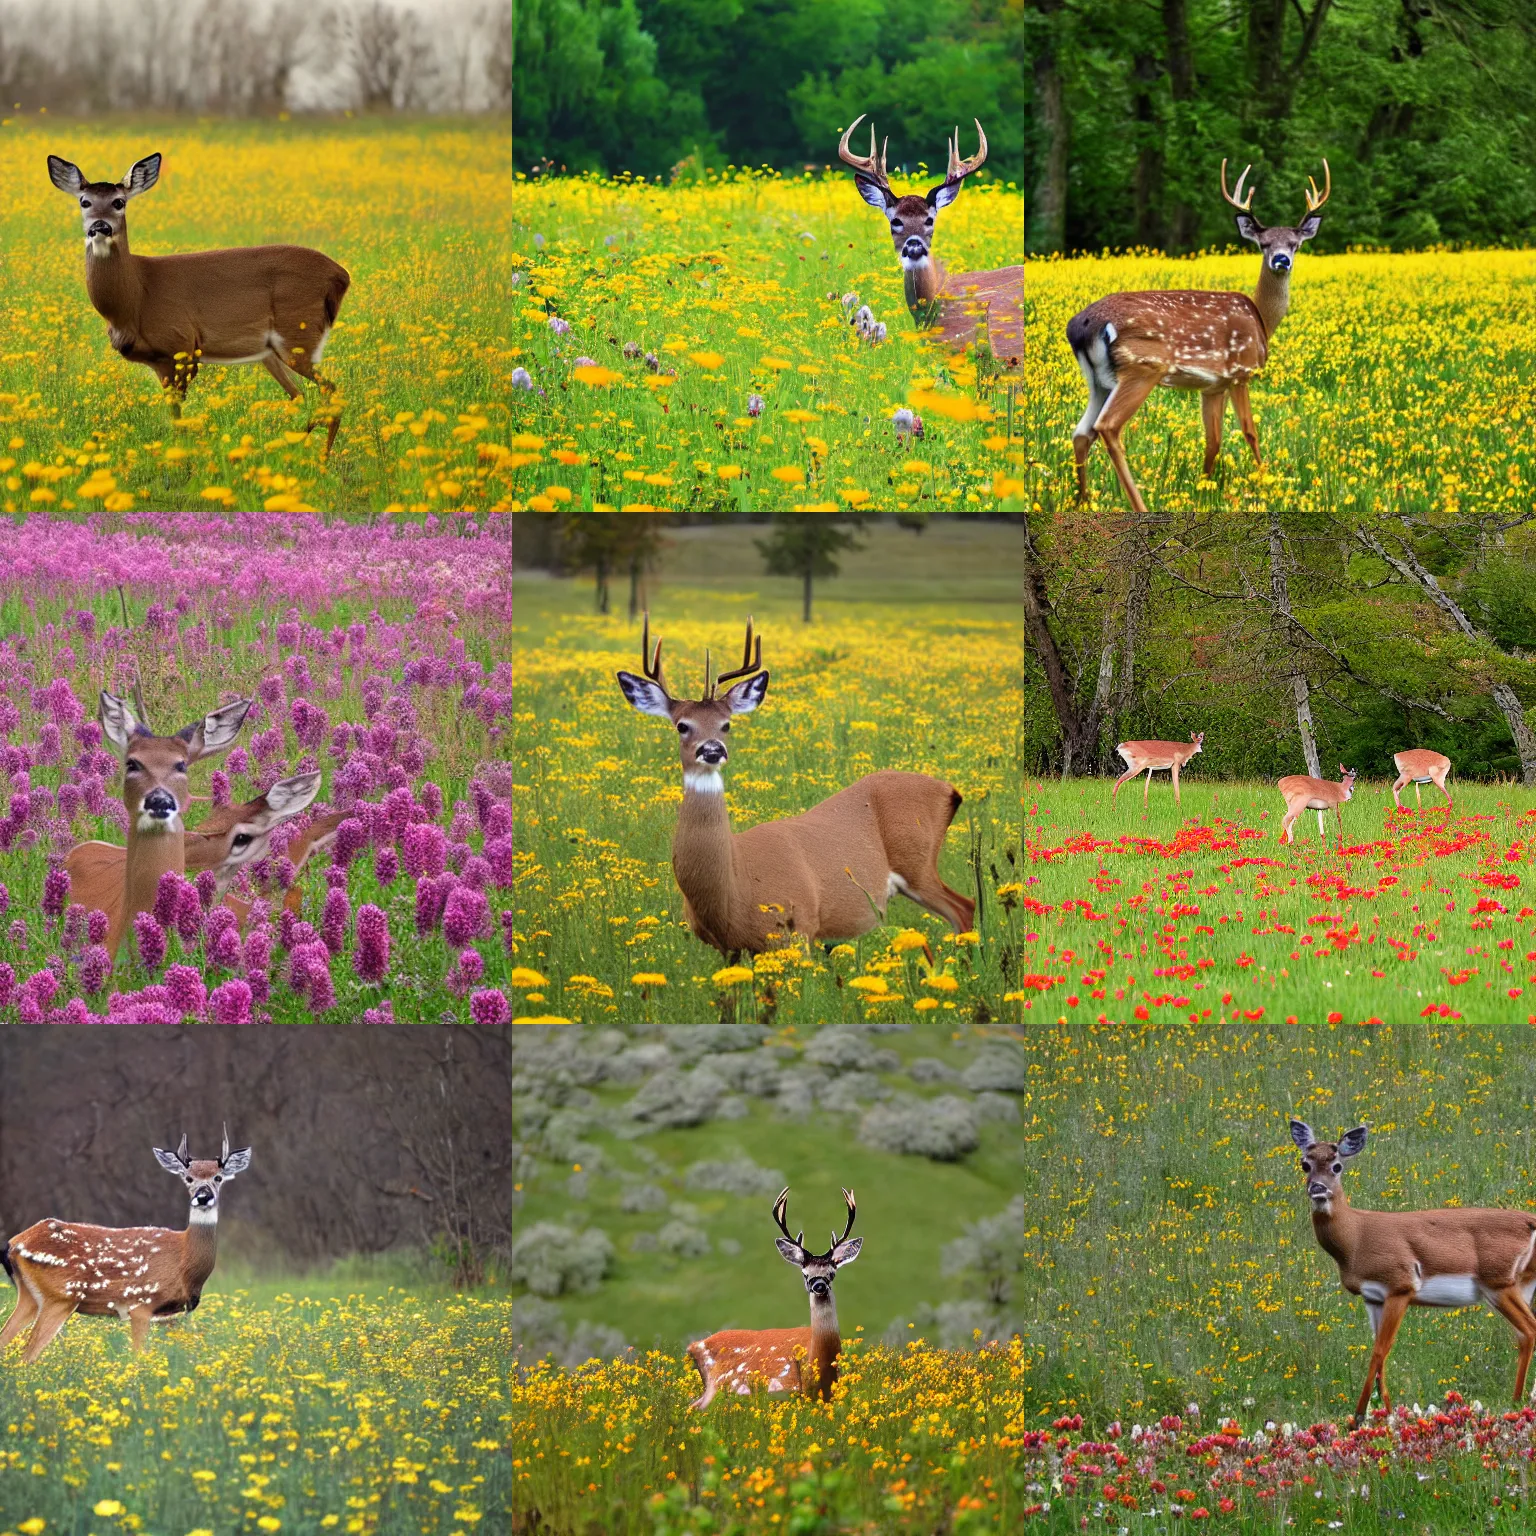 Prompt: deer in a flower meadow